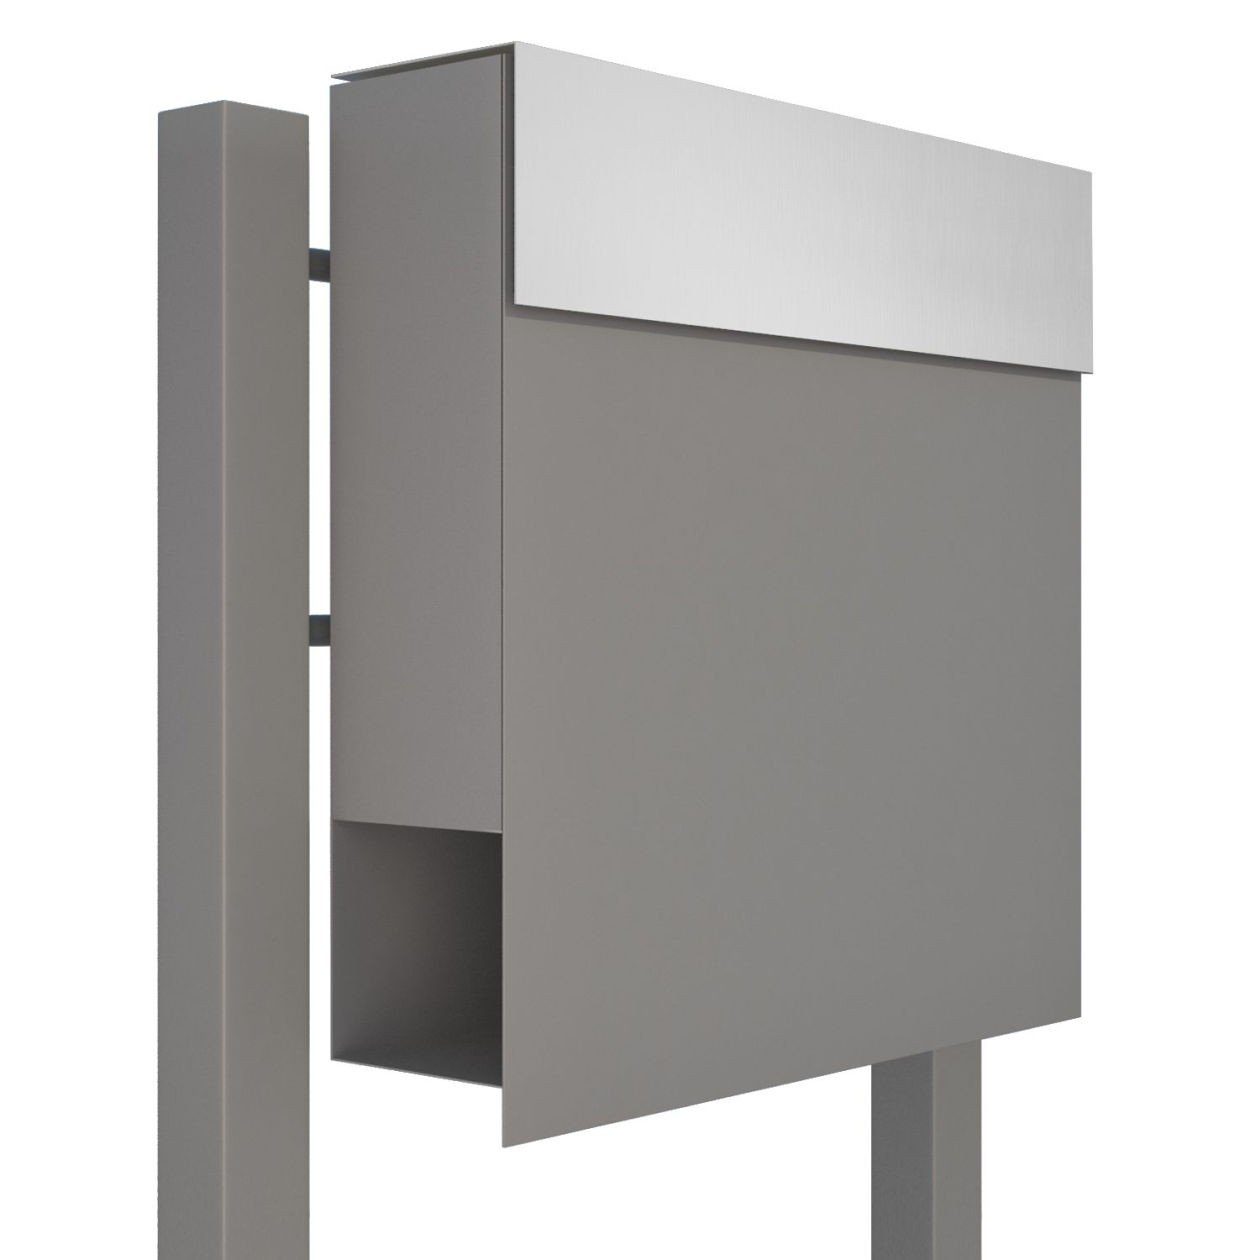 Bravios Briefkasten Standbriefkasten Manhattan Grau Metallic mit Edel